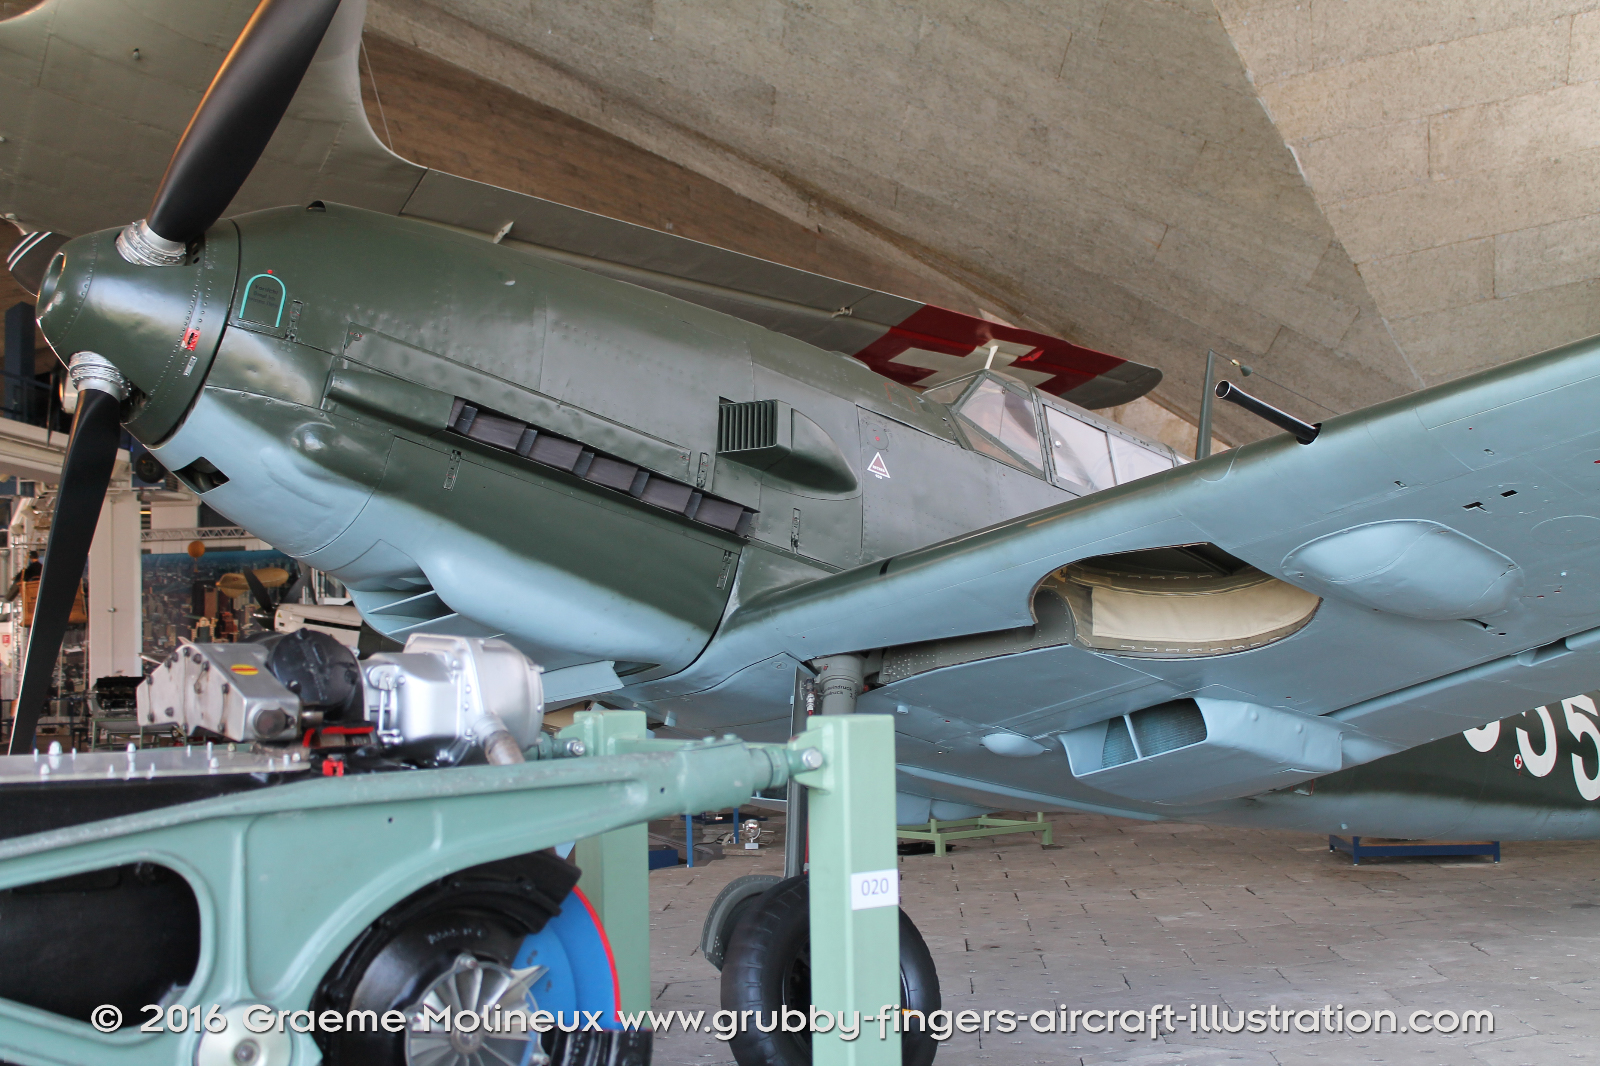 MESSERSCHMITT_BF_109E_J-355_Swiss_Air_Force_Museum_2015_09_GrubbyFingers